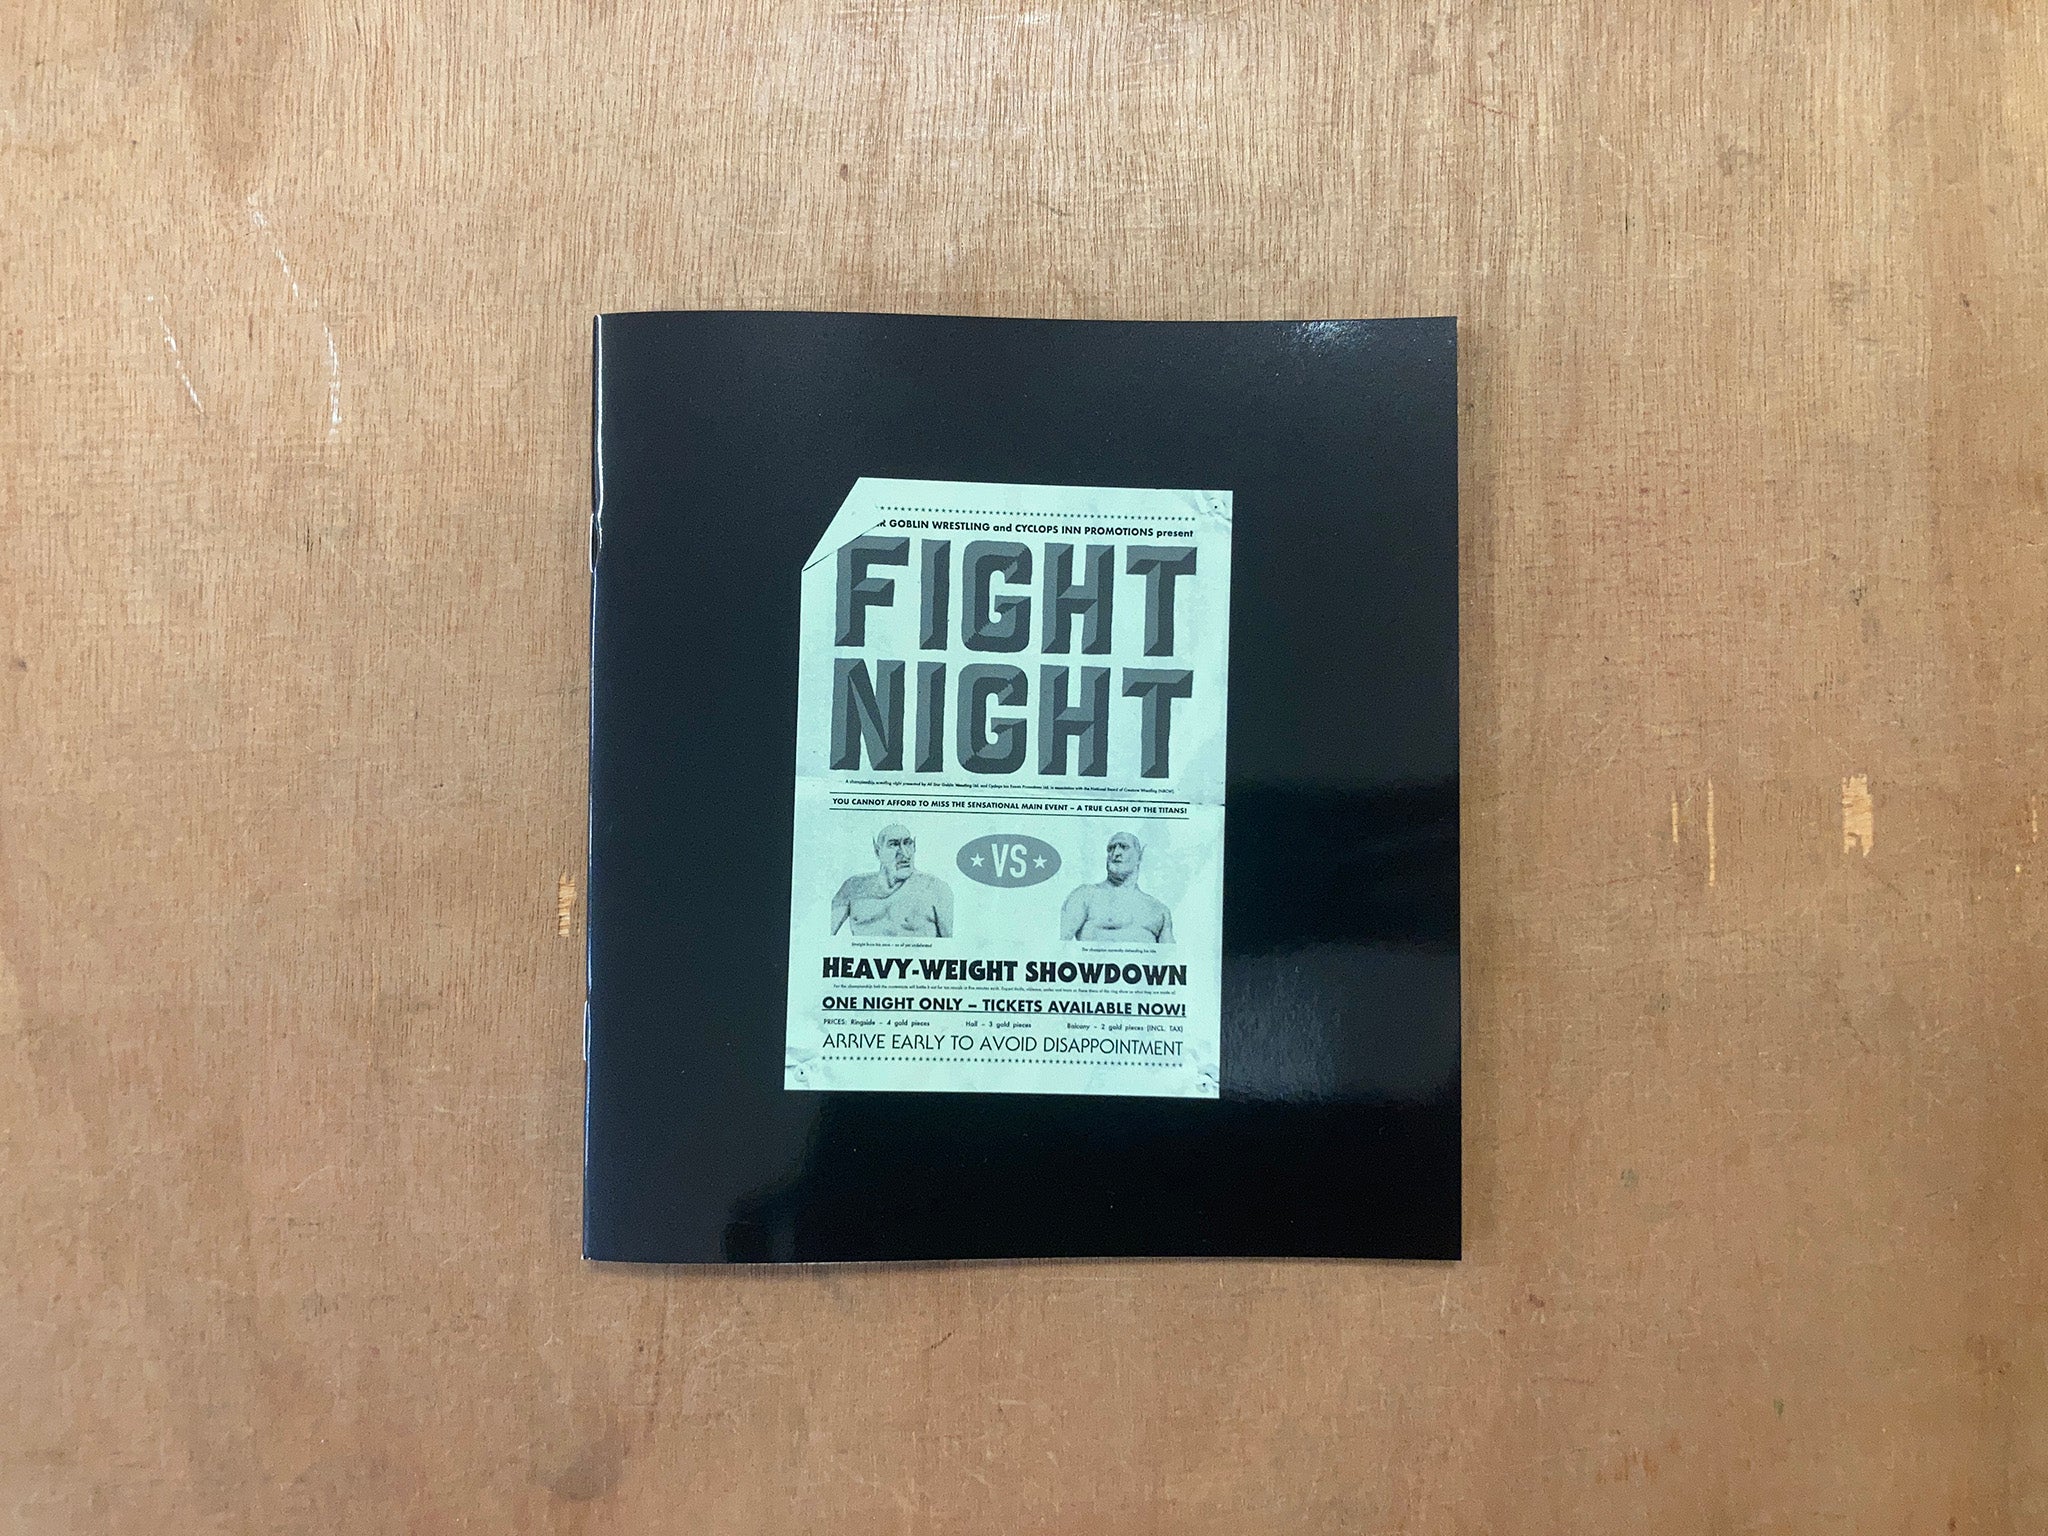 FIGHT NIGHT by Joe Learmonth